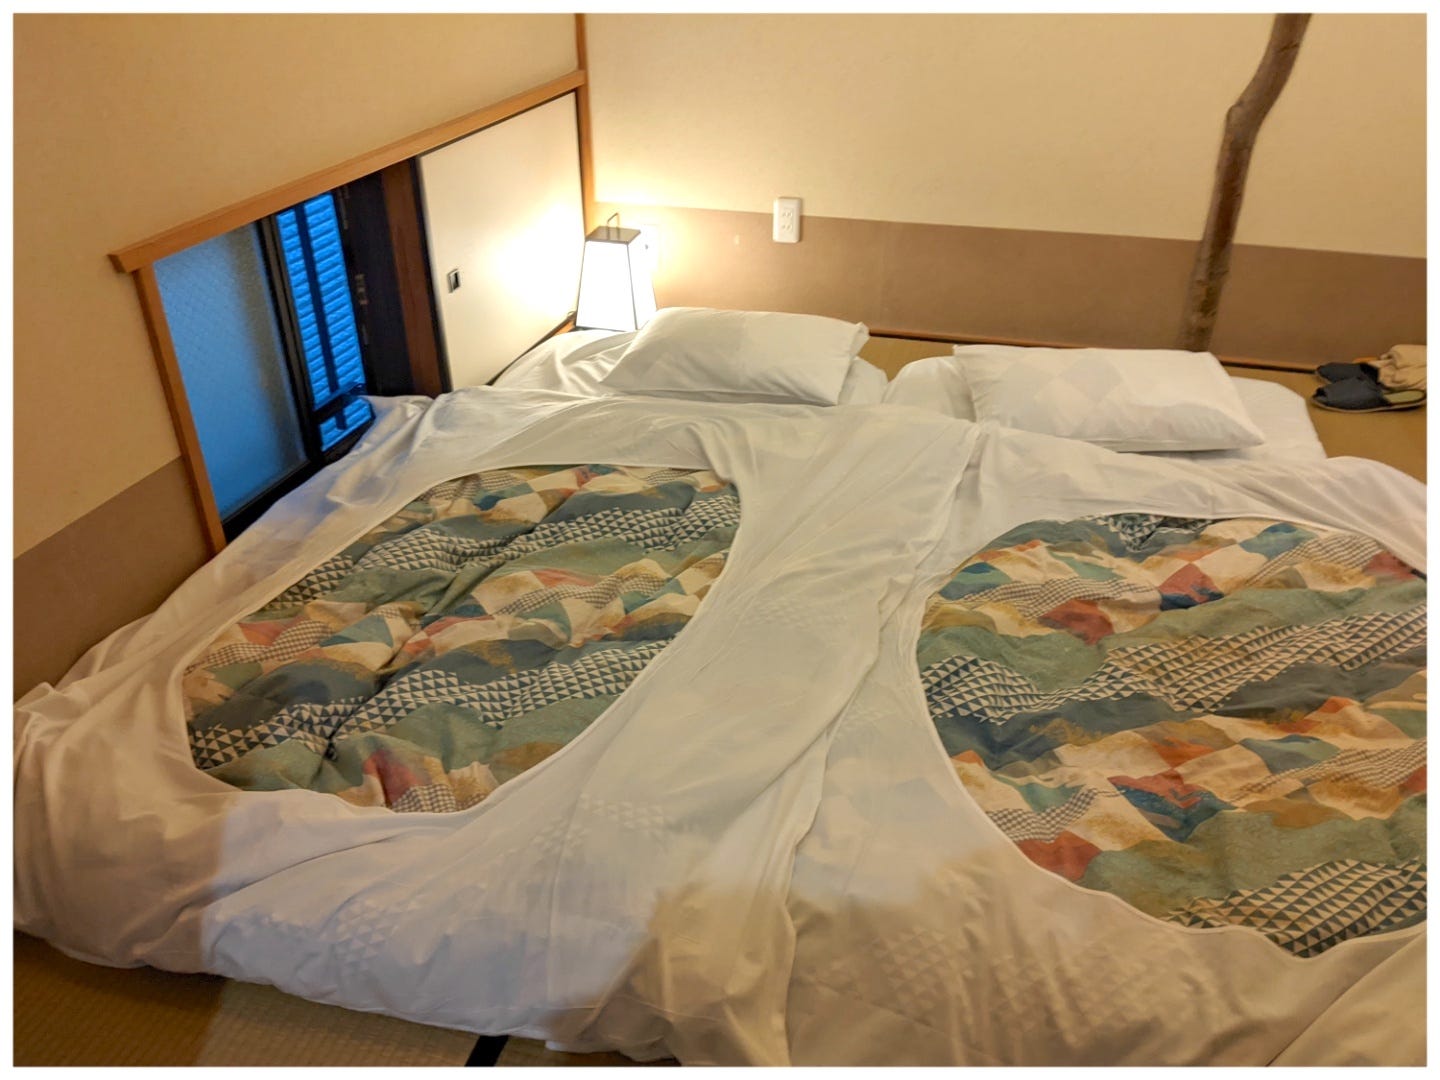 Ein Futonbett im japanischen Stil auf einem Tatami-Mattenboden neben einem kleinen bodentiefen Fenster.  Auf dem Bett liegt ein bunter Bettbezug.